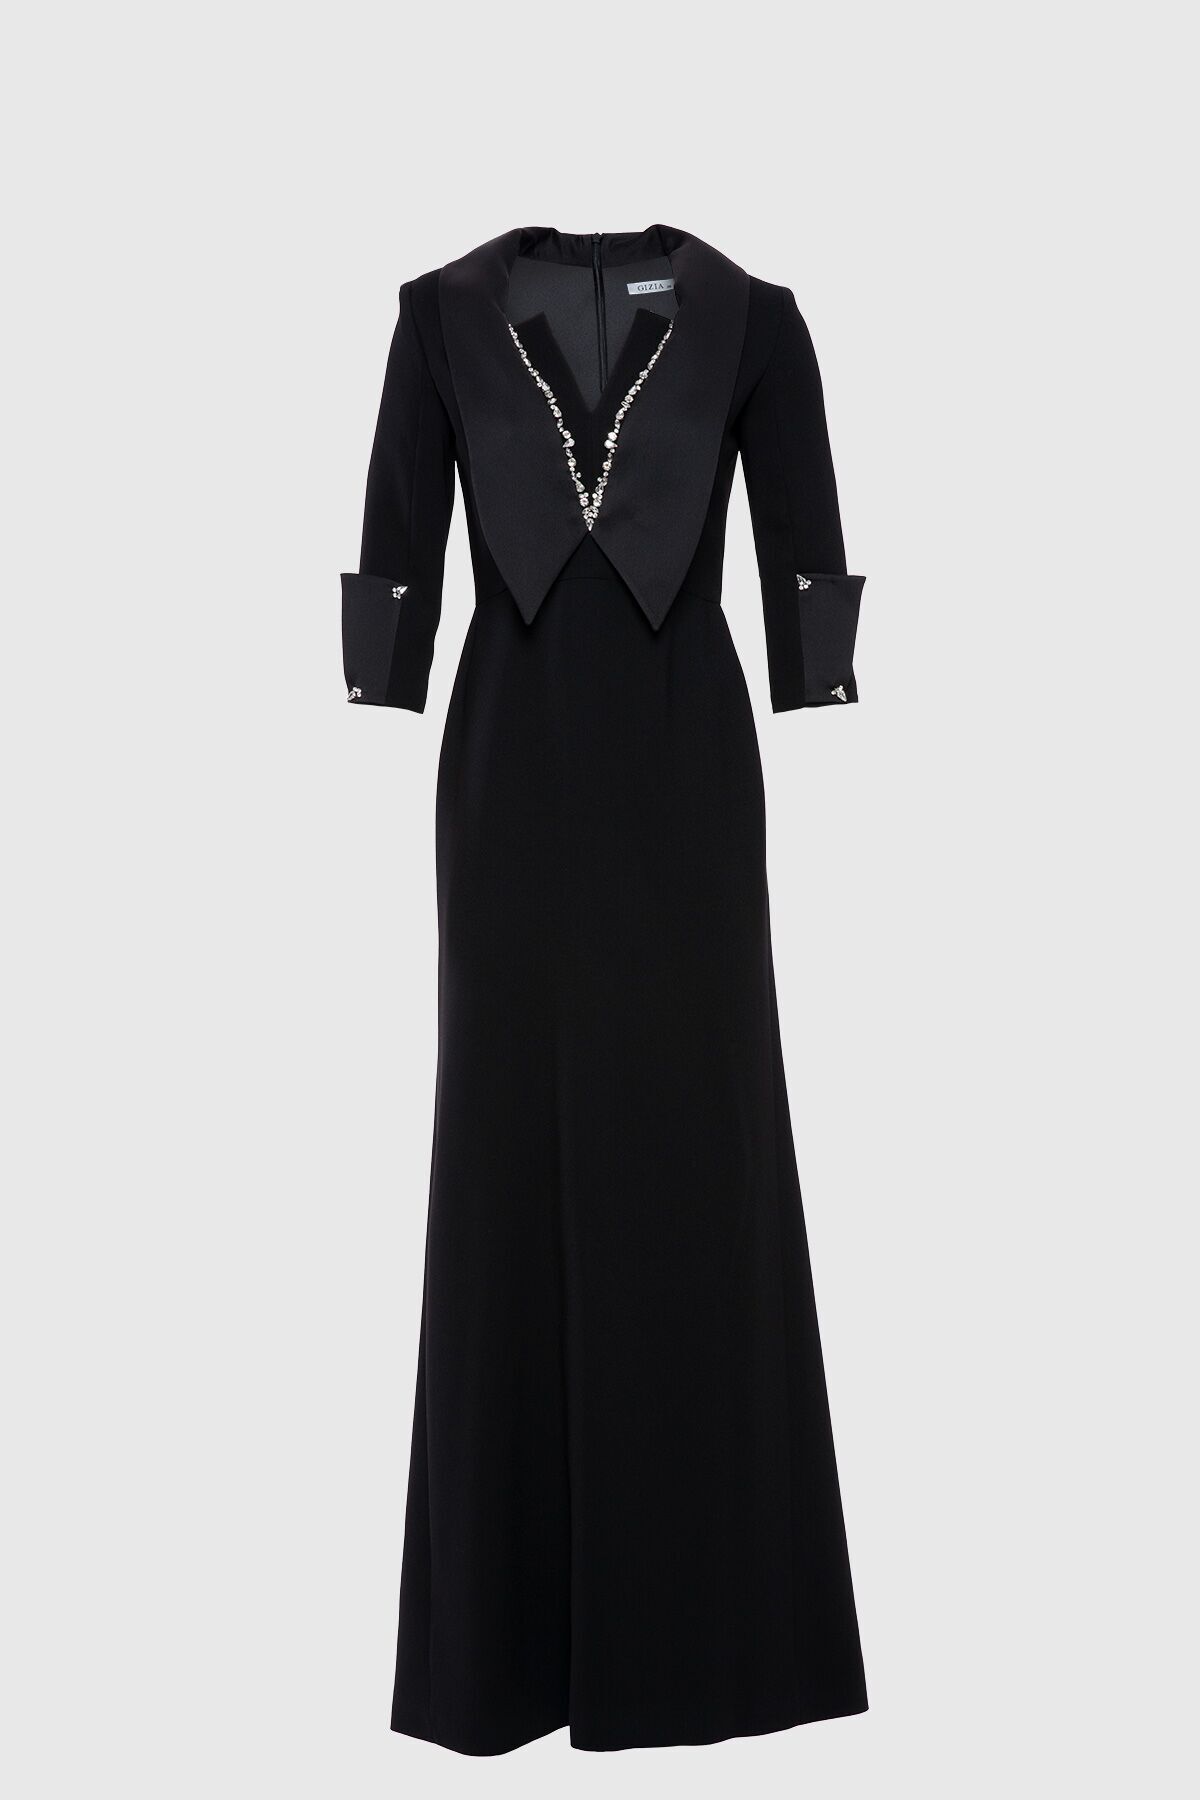 GIZIA Yaka Ve Kol Detaylı Yakası Işlemeli Şık Siyah Abiye Elbise